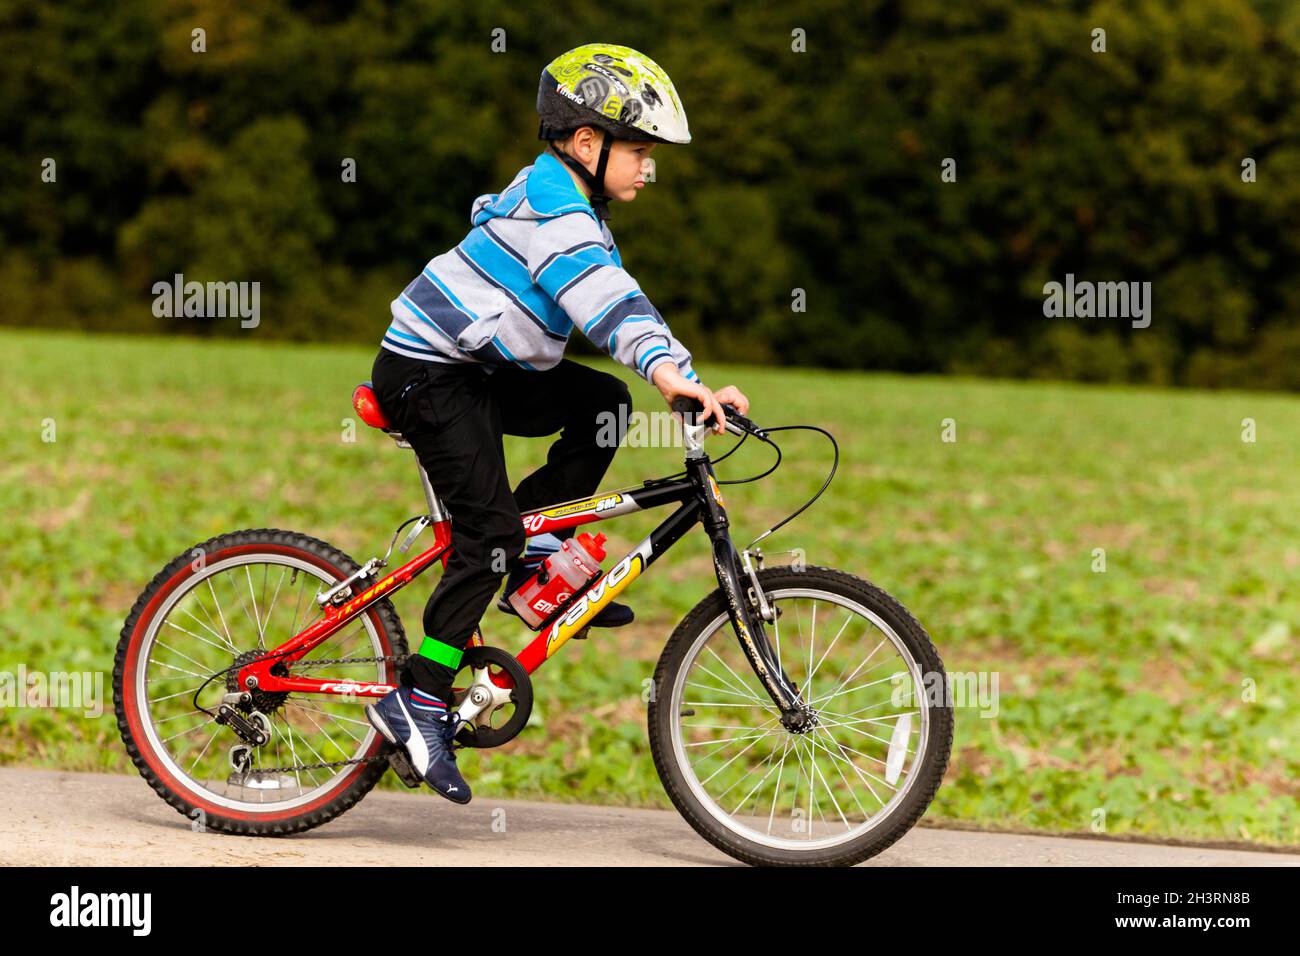 Vélo pour enfant avec casque, vélo pour garçon Banque D'Images